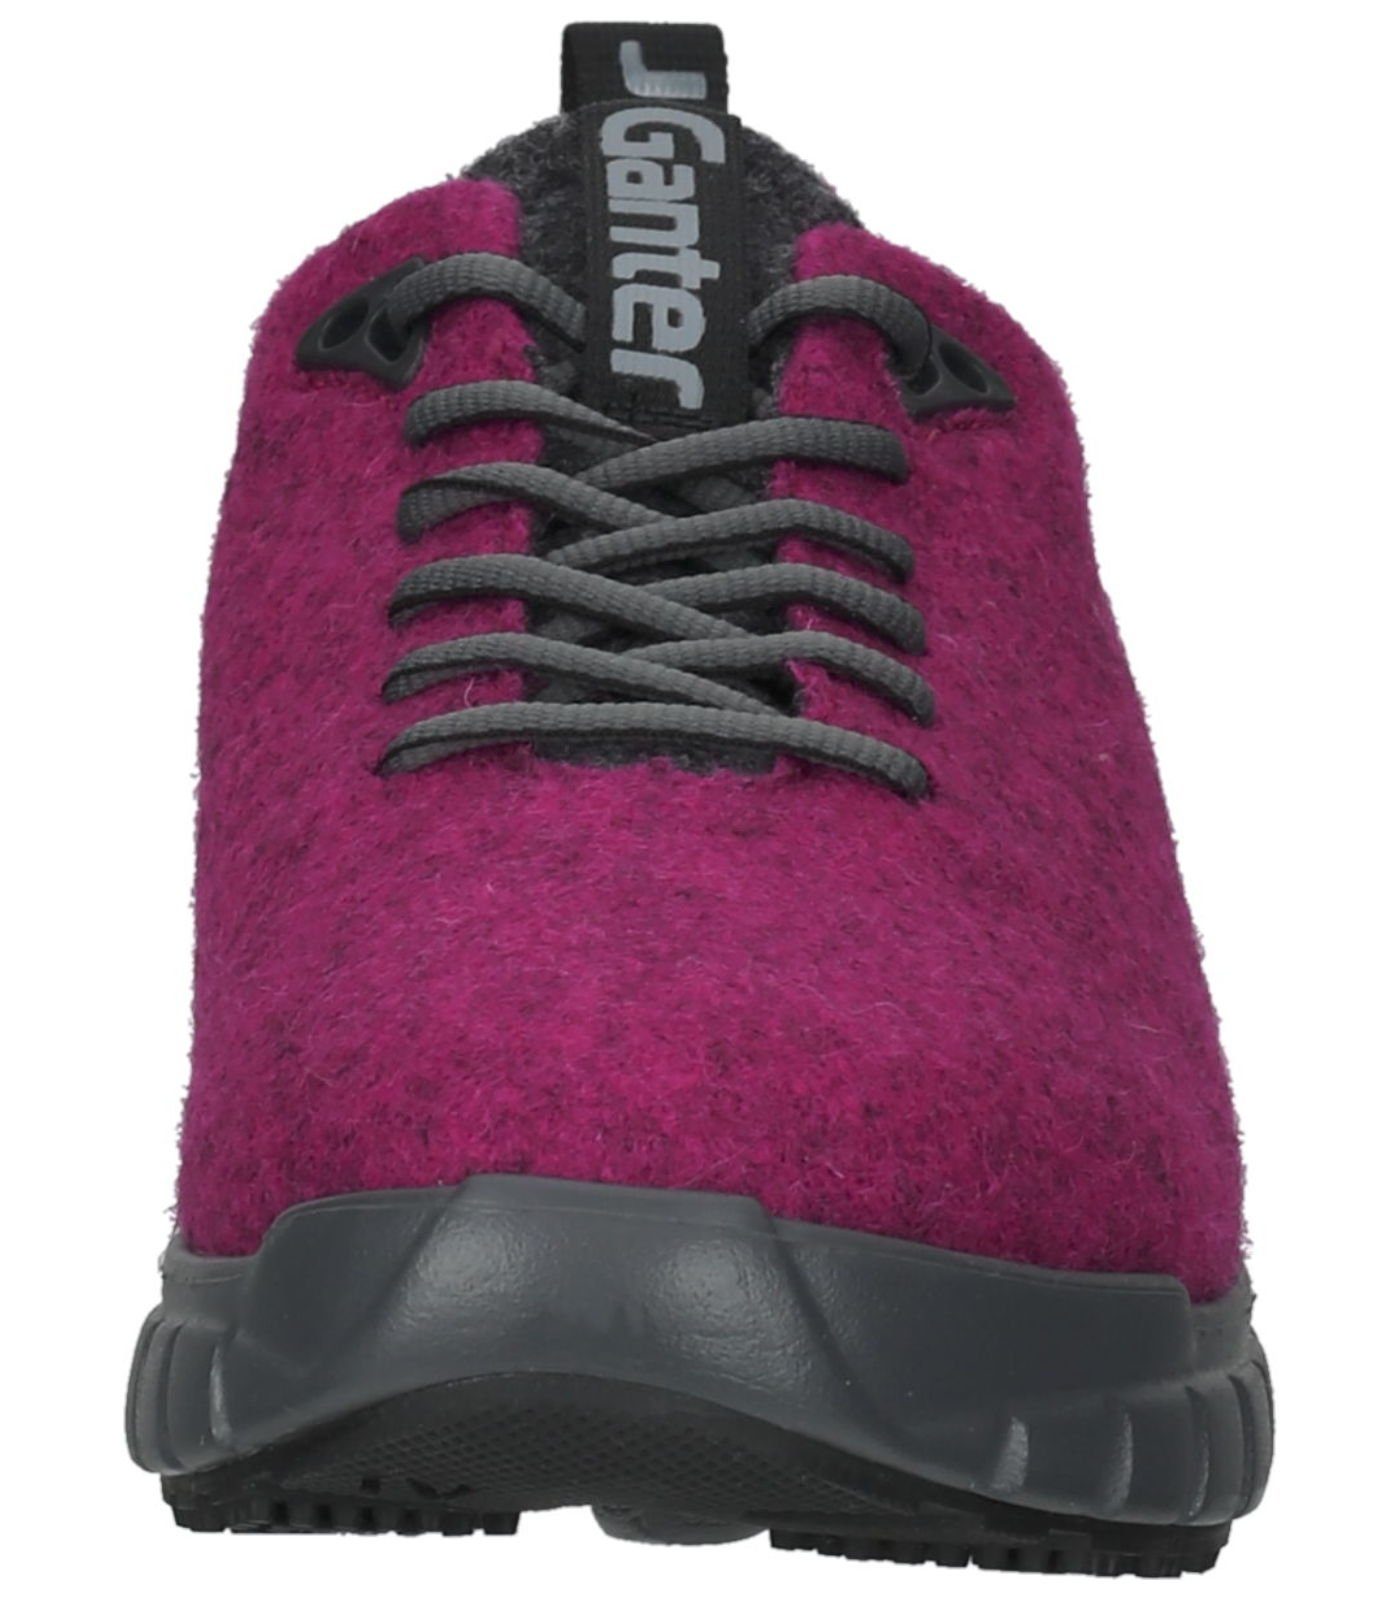 Lederimitat/Textil Ganter Sneaker Pink Sneaker